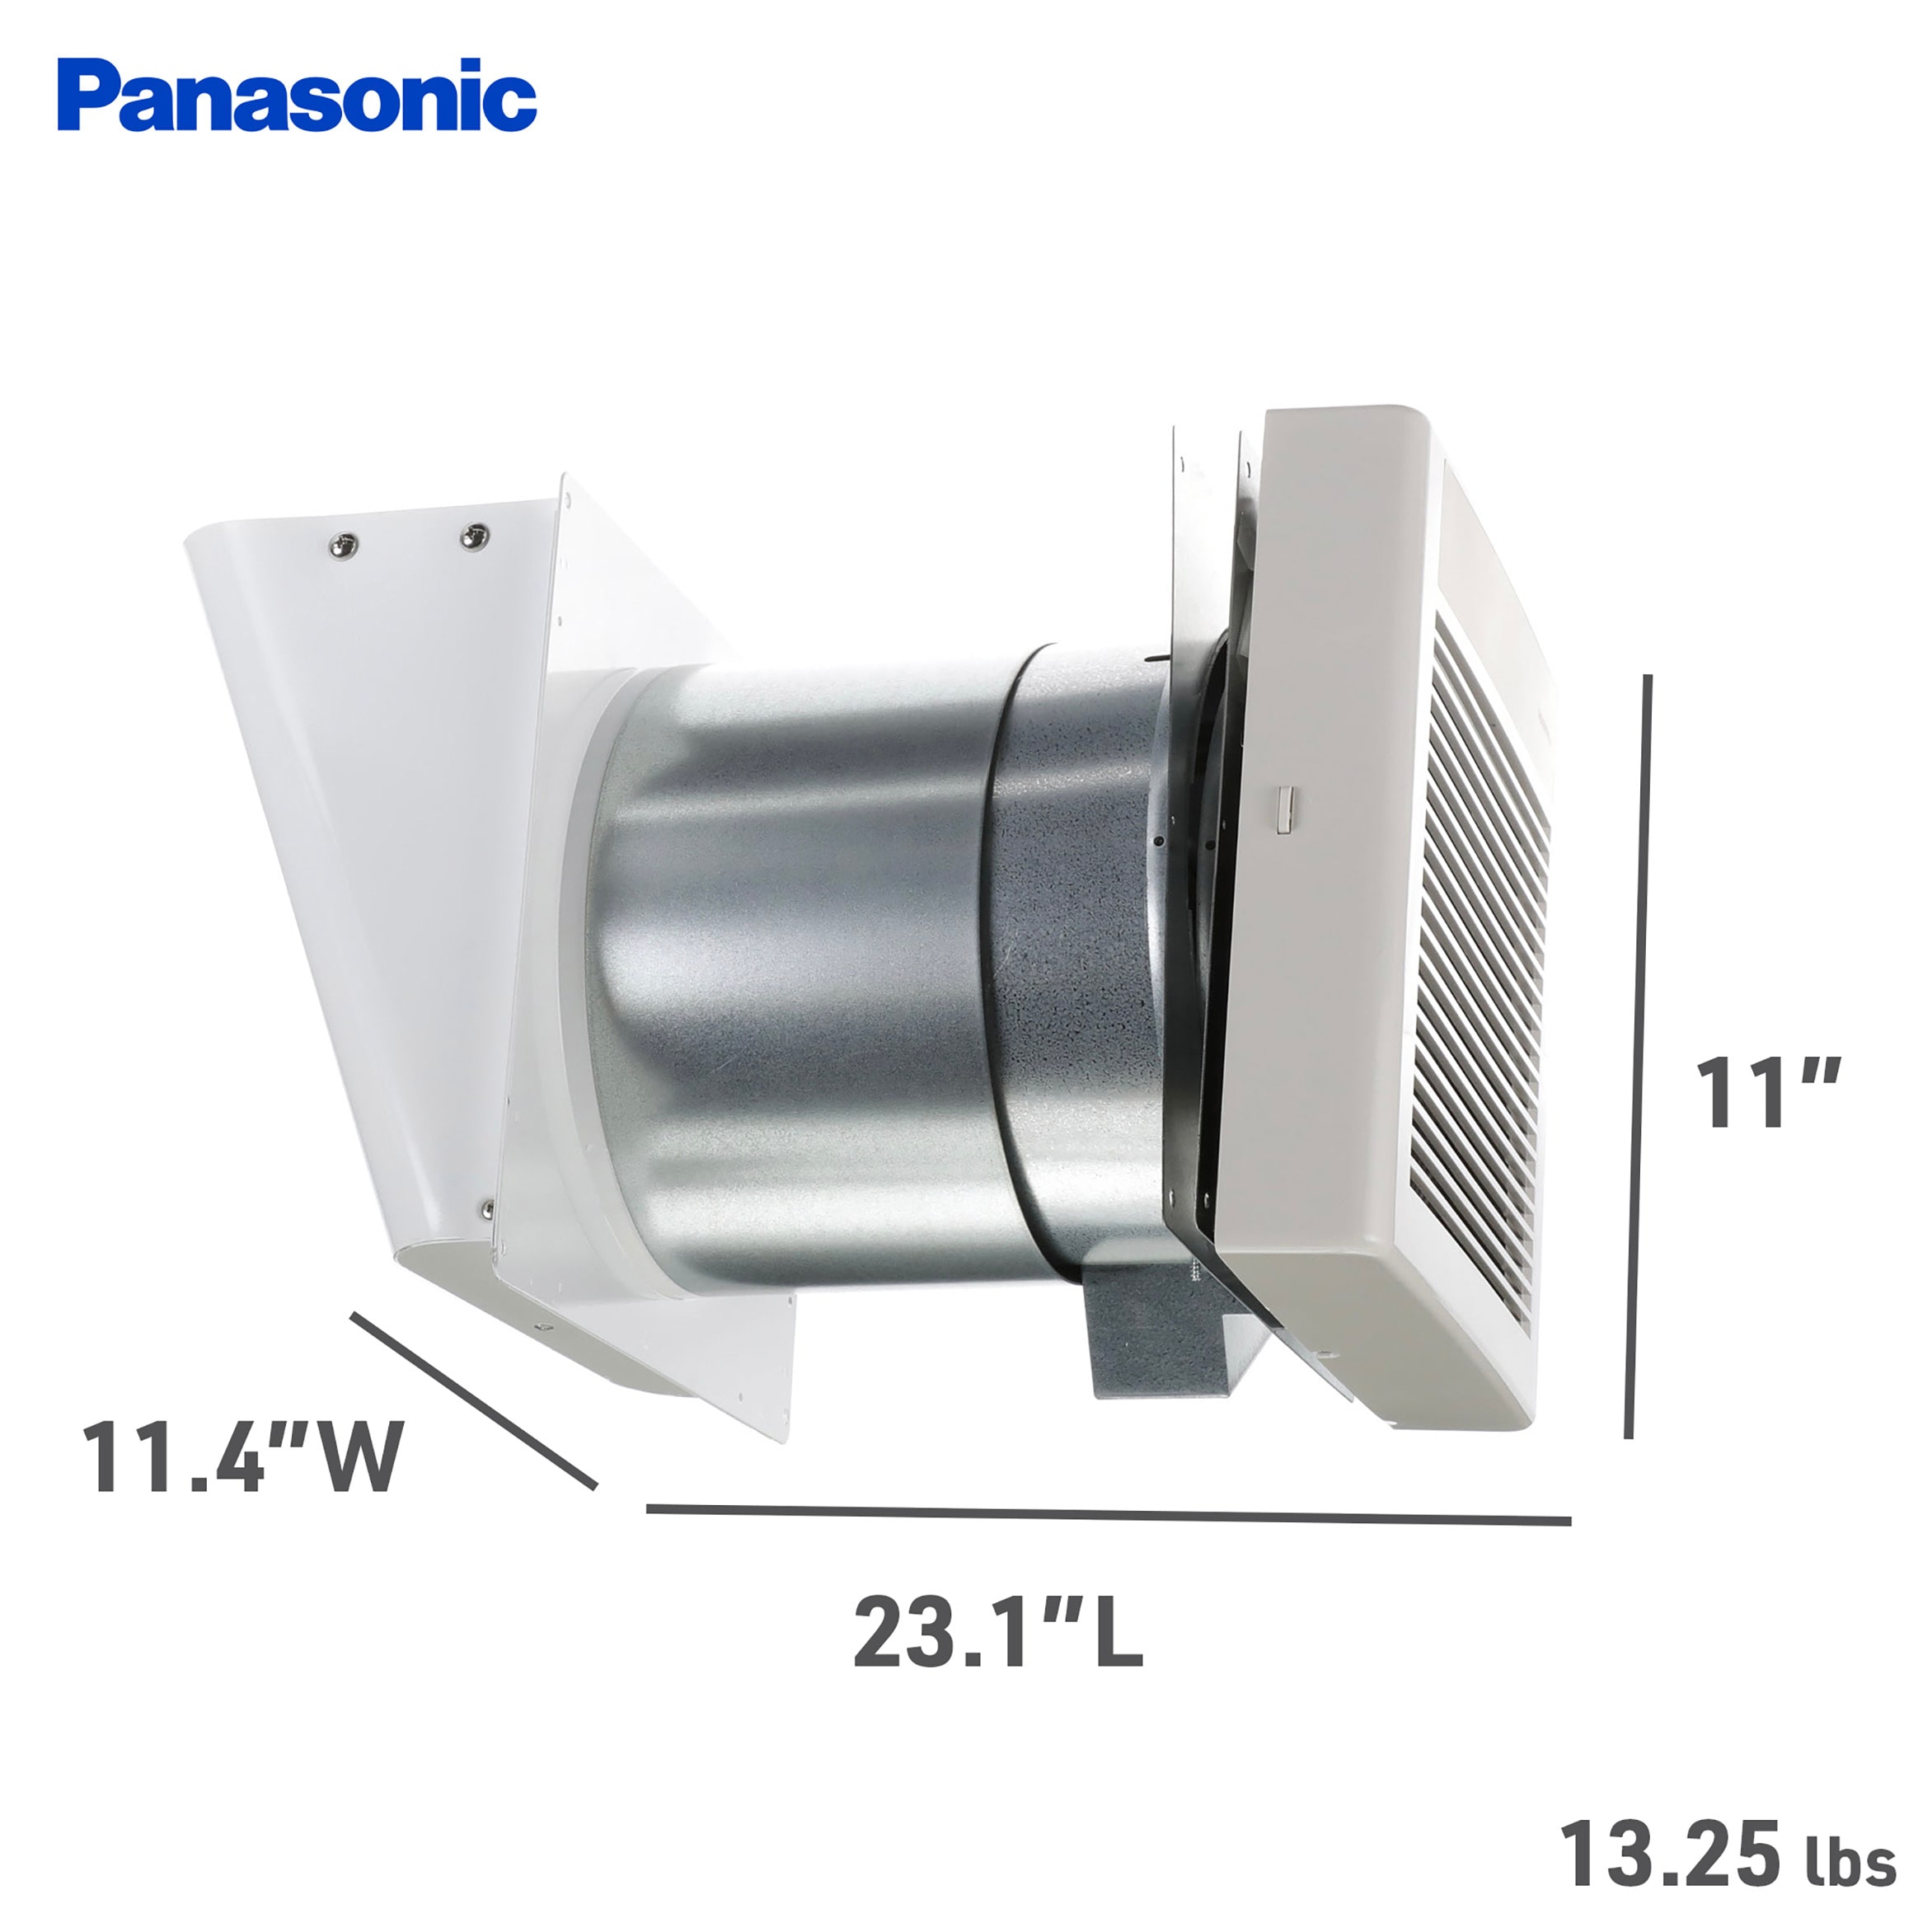 Panasonic Whisperwall 1 Sone 70 Cfm